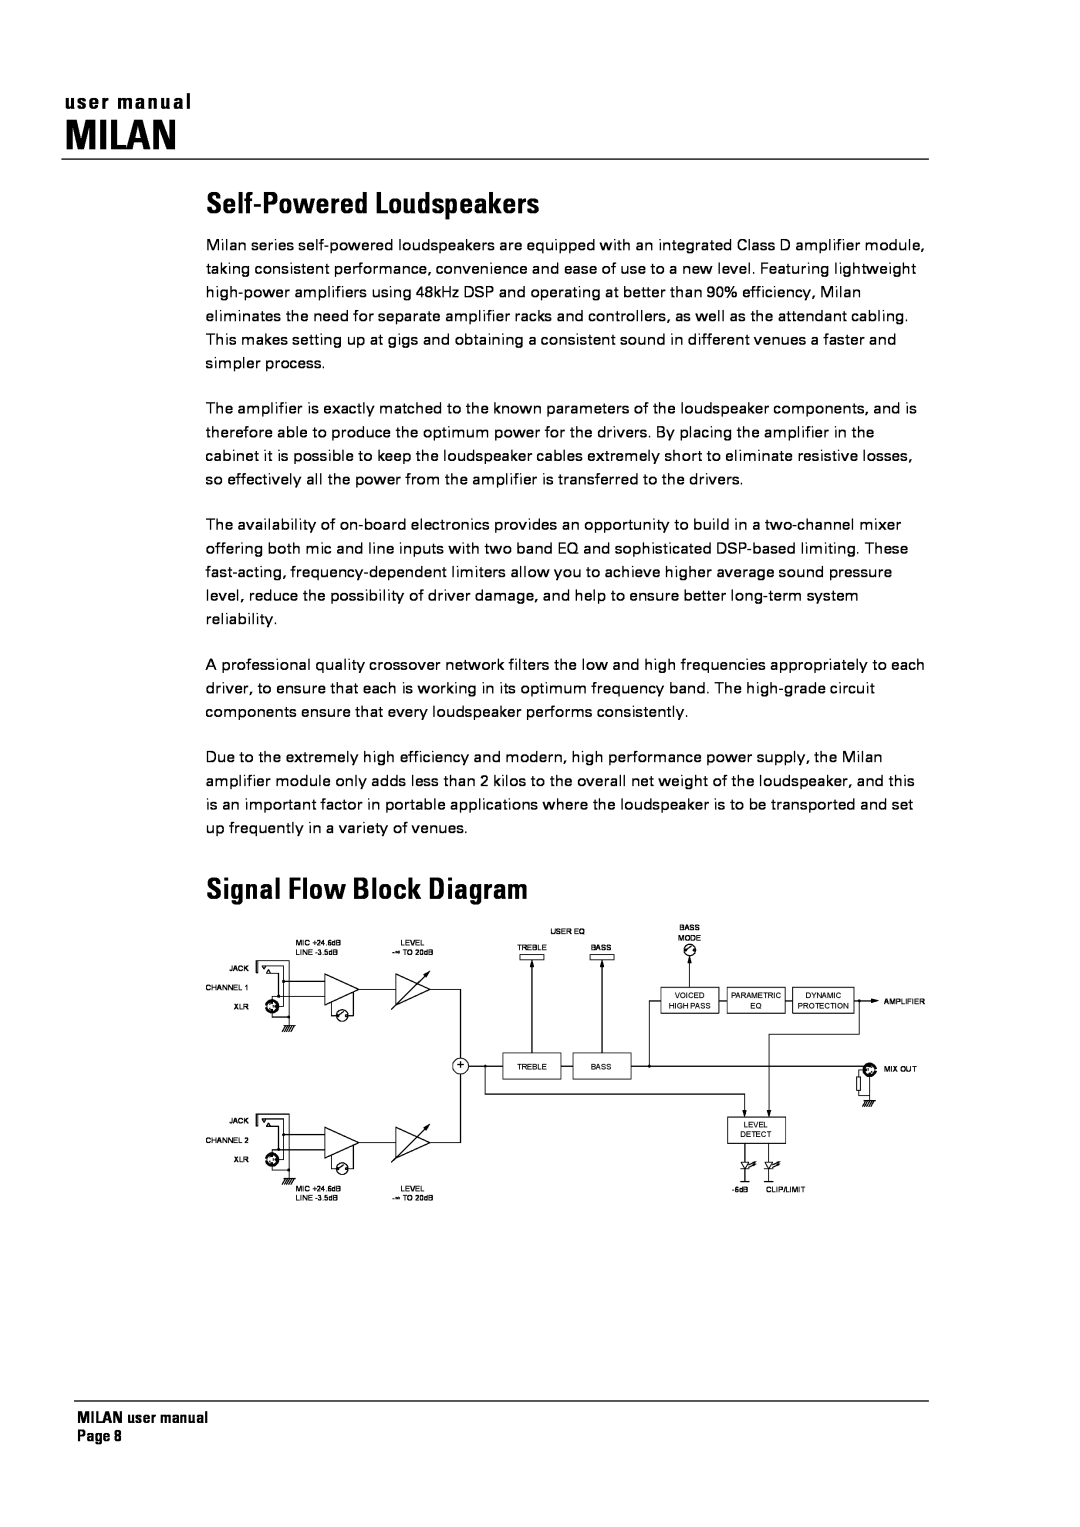 Turbosound MI5 Self-PoweredLoudspeakers, Signal Flow Block Diagram, Milan, user manual 